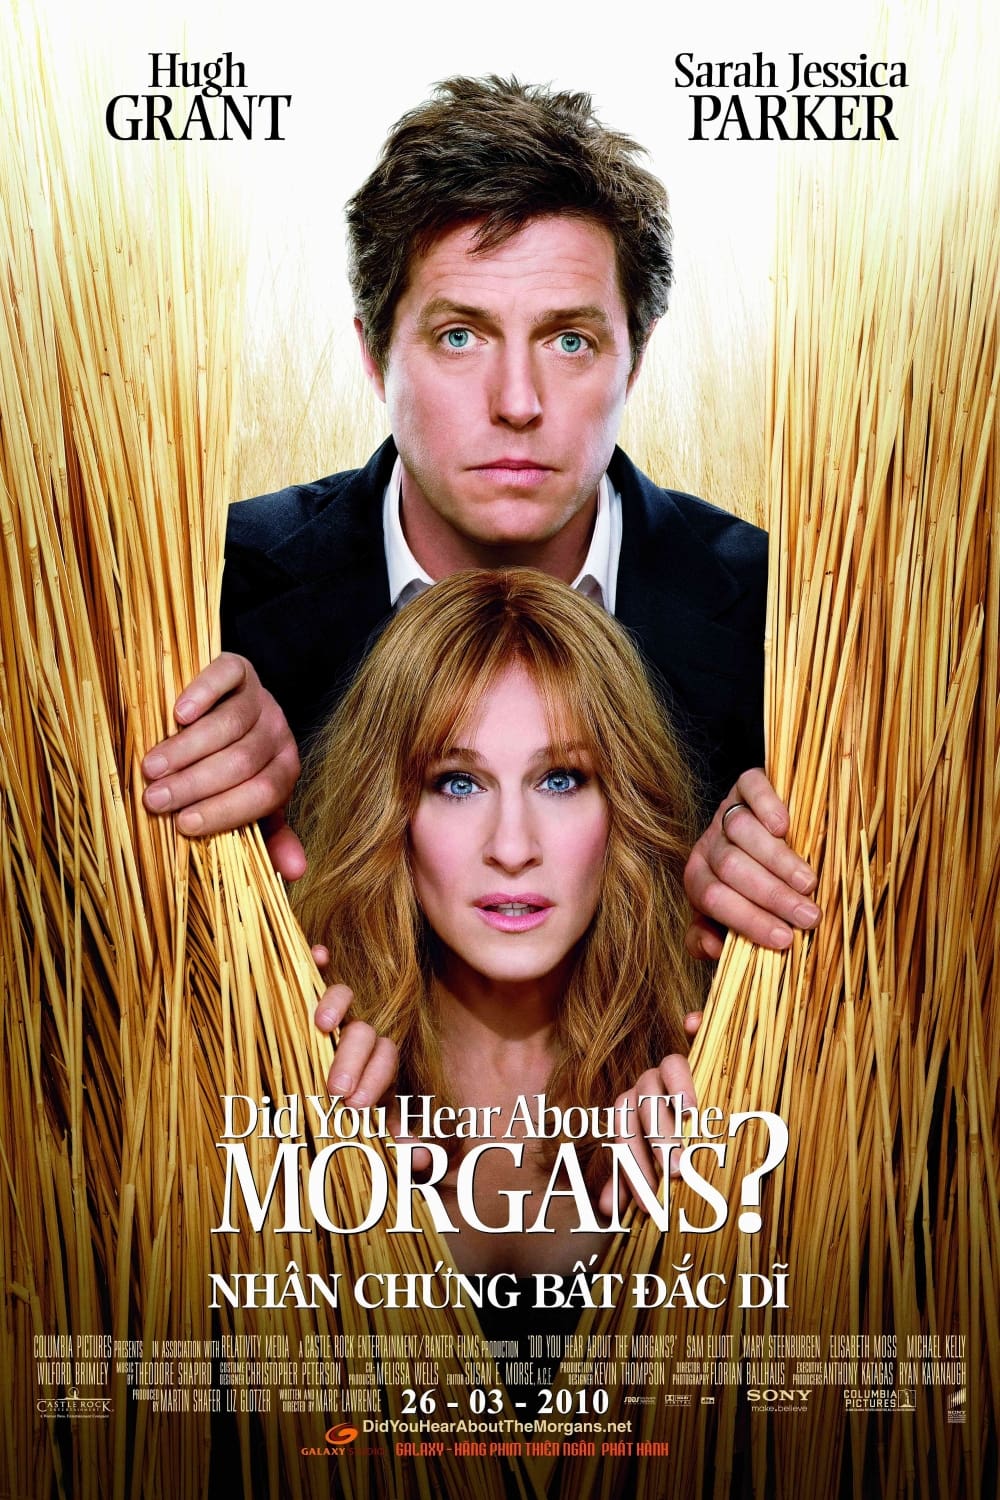 Nhân Chứng Bất Đắc Dĩ (Did You Hear About the Morgans?) [2009]